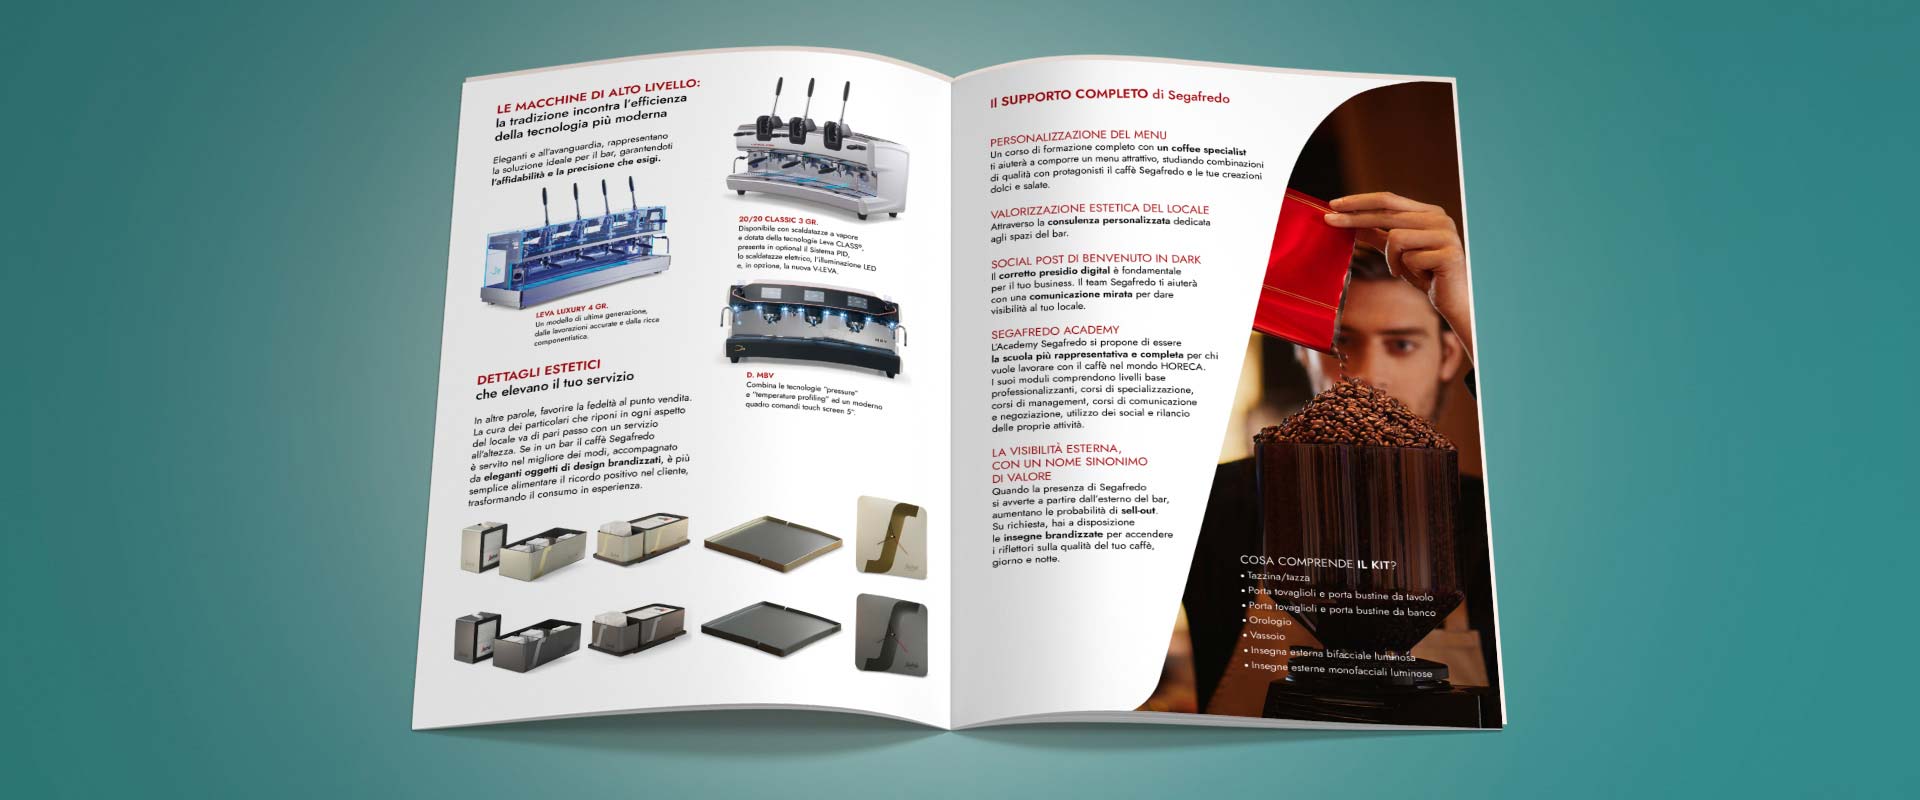 Il toolkit cartaceo B2B Segafredo realizzato da ATC per il canale Ho.Re.Ca. include una brochure e i cataloghi per i diversi canali di vendita